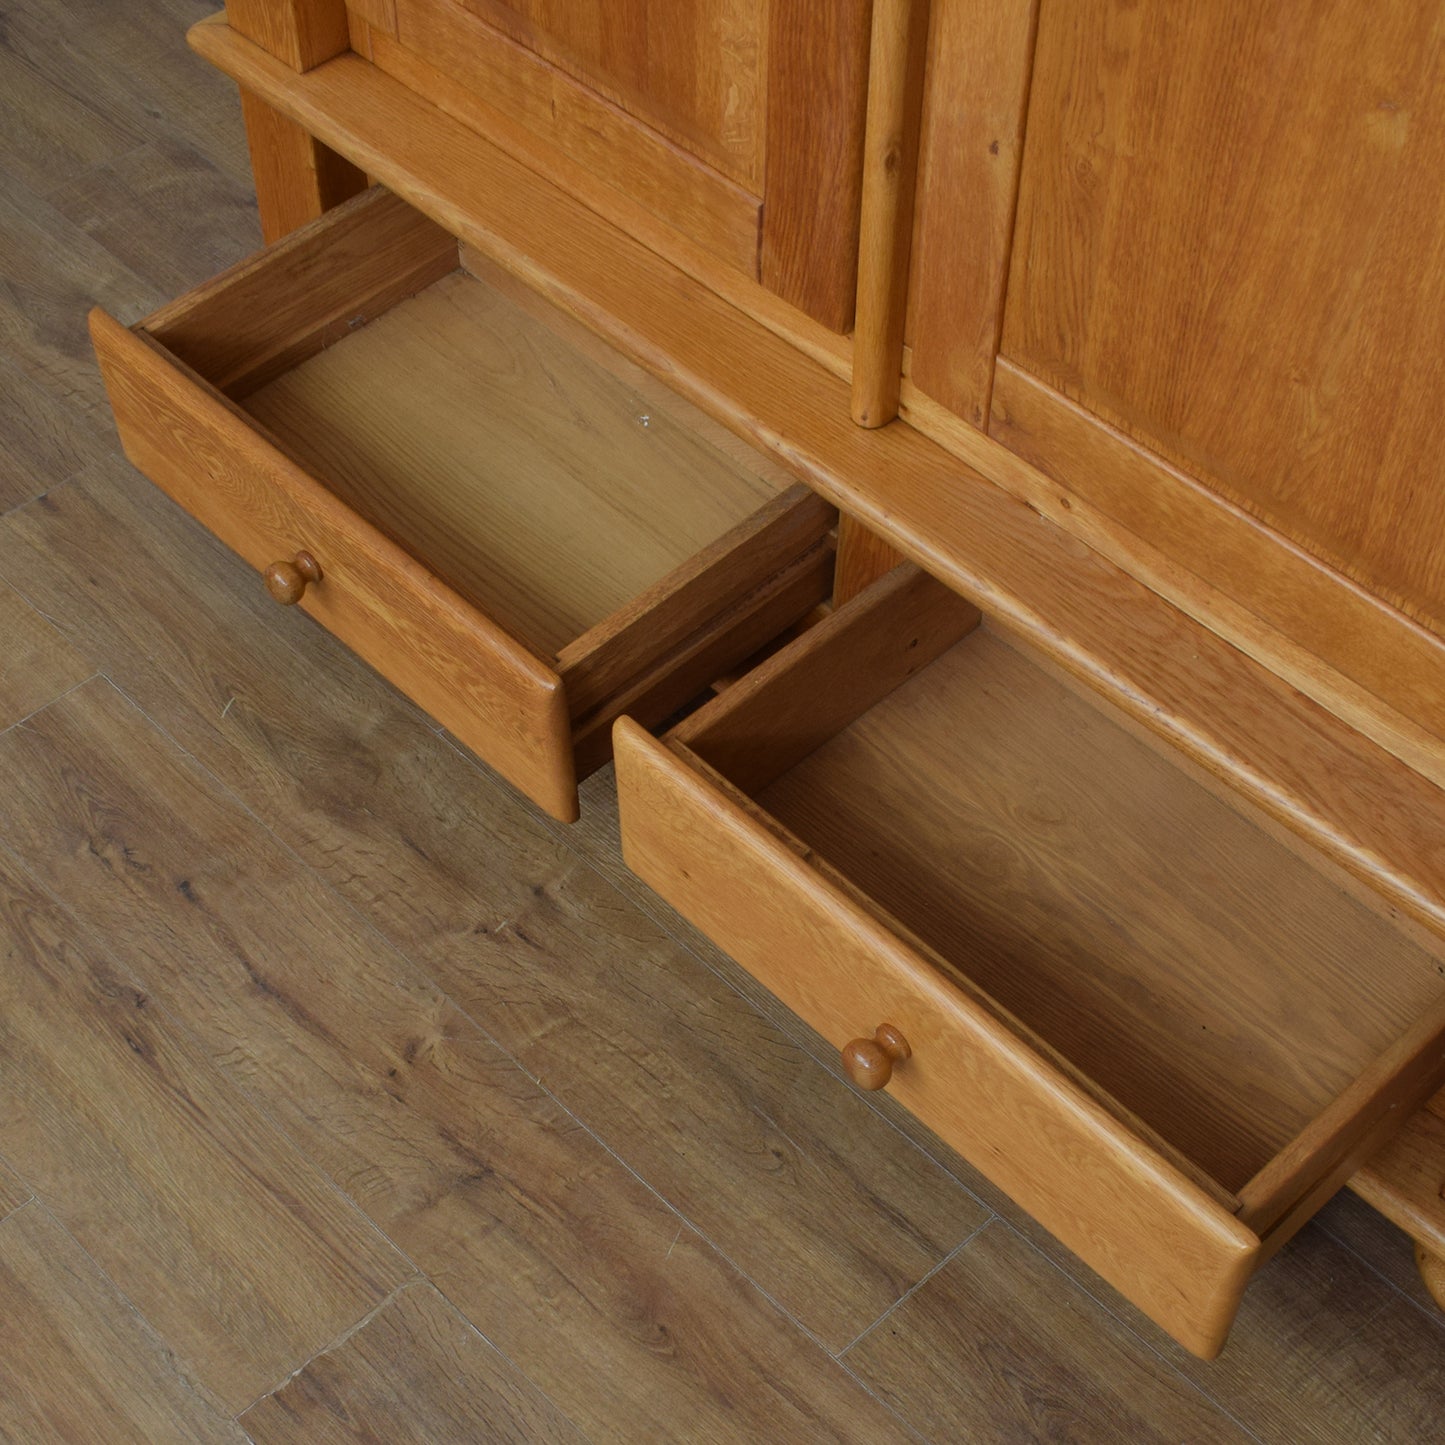 Oak Storage Linen Cabinet